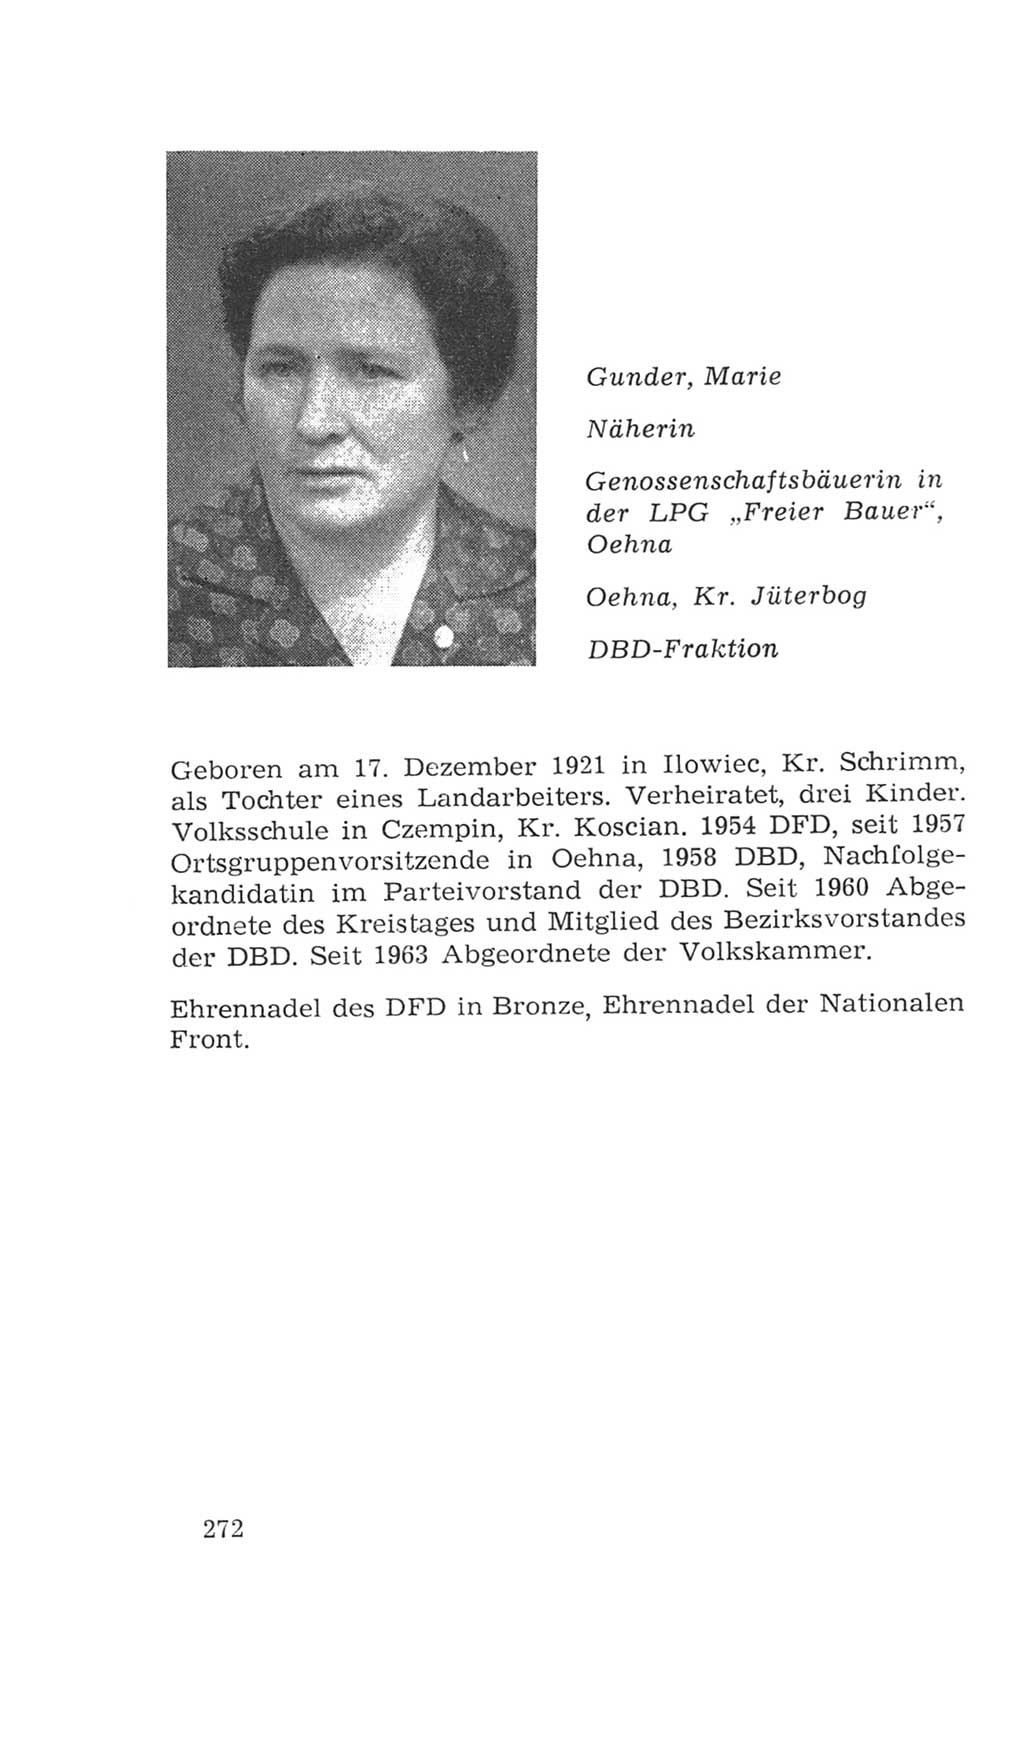 Volkskammer (VK) der Deutschen Demokratischen Republik (DDR), 4. Wahlperiode 1963-1967, Seite 272 (VK. DDR 4. WP. 1963-1967, S. 272)